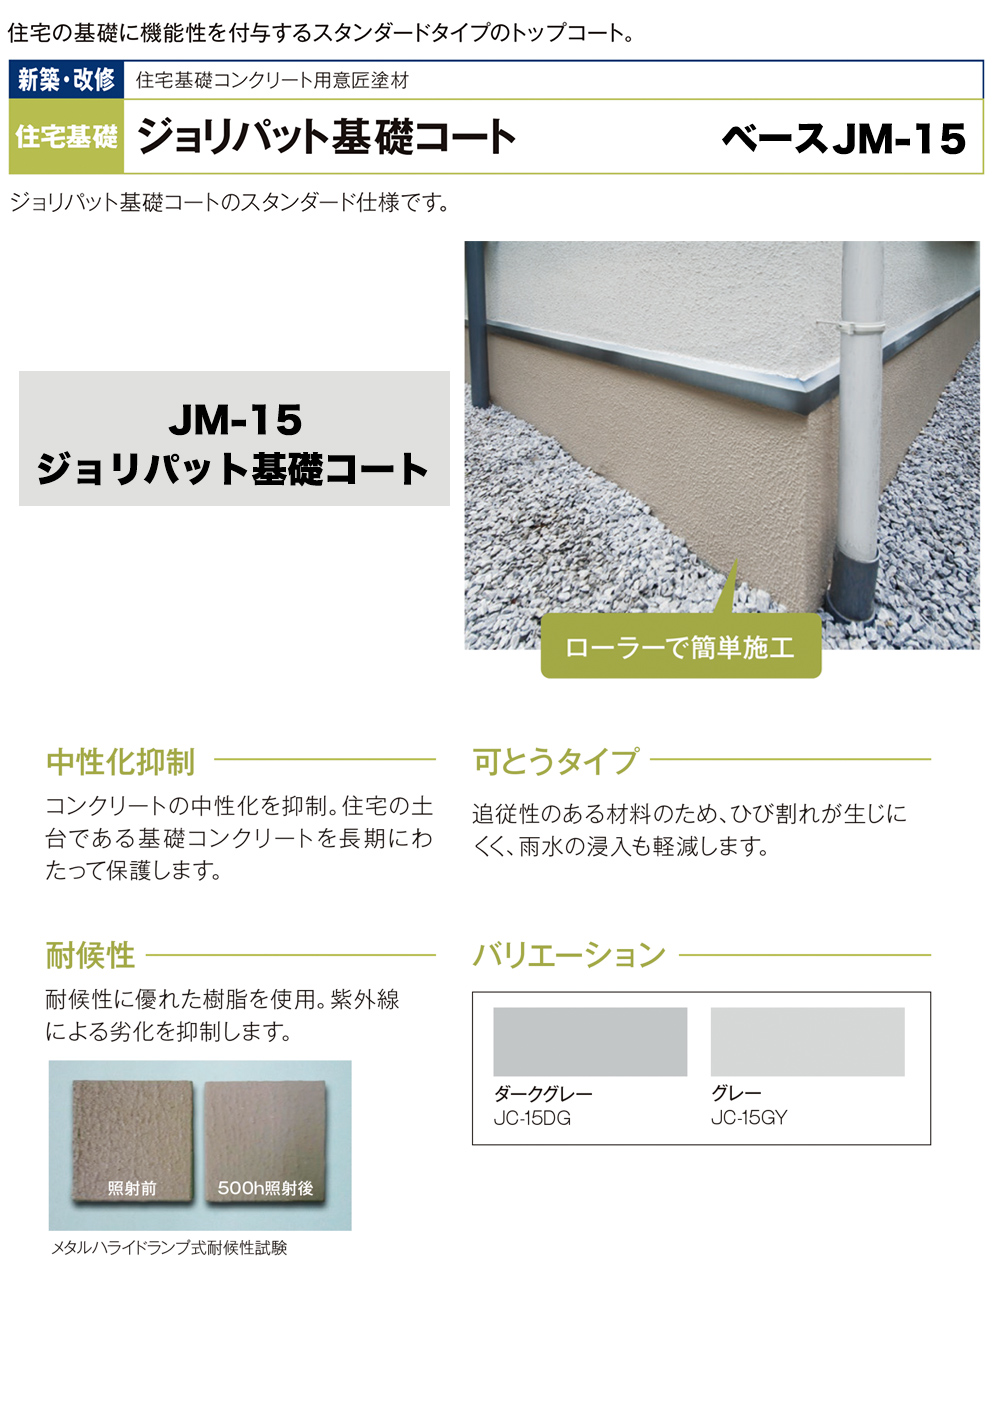 ジョリパット基礎コート ベース JM-15 20kgセット 【メーカー直送便/代